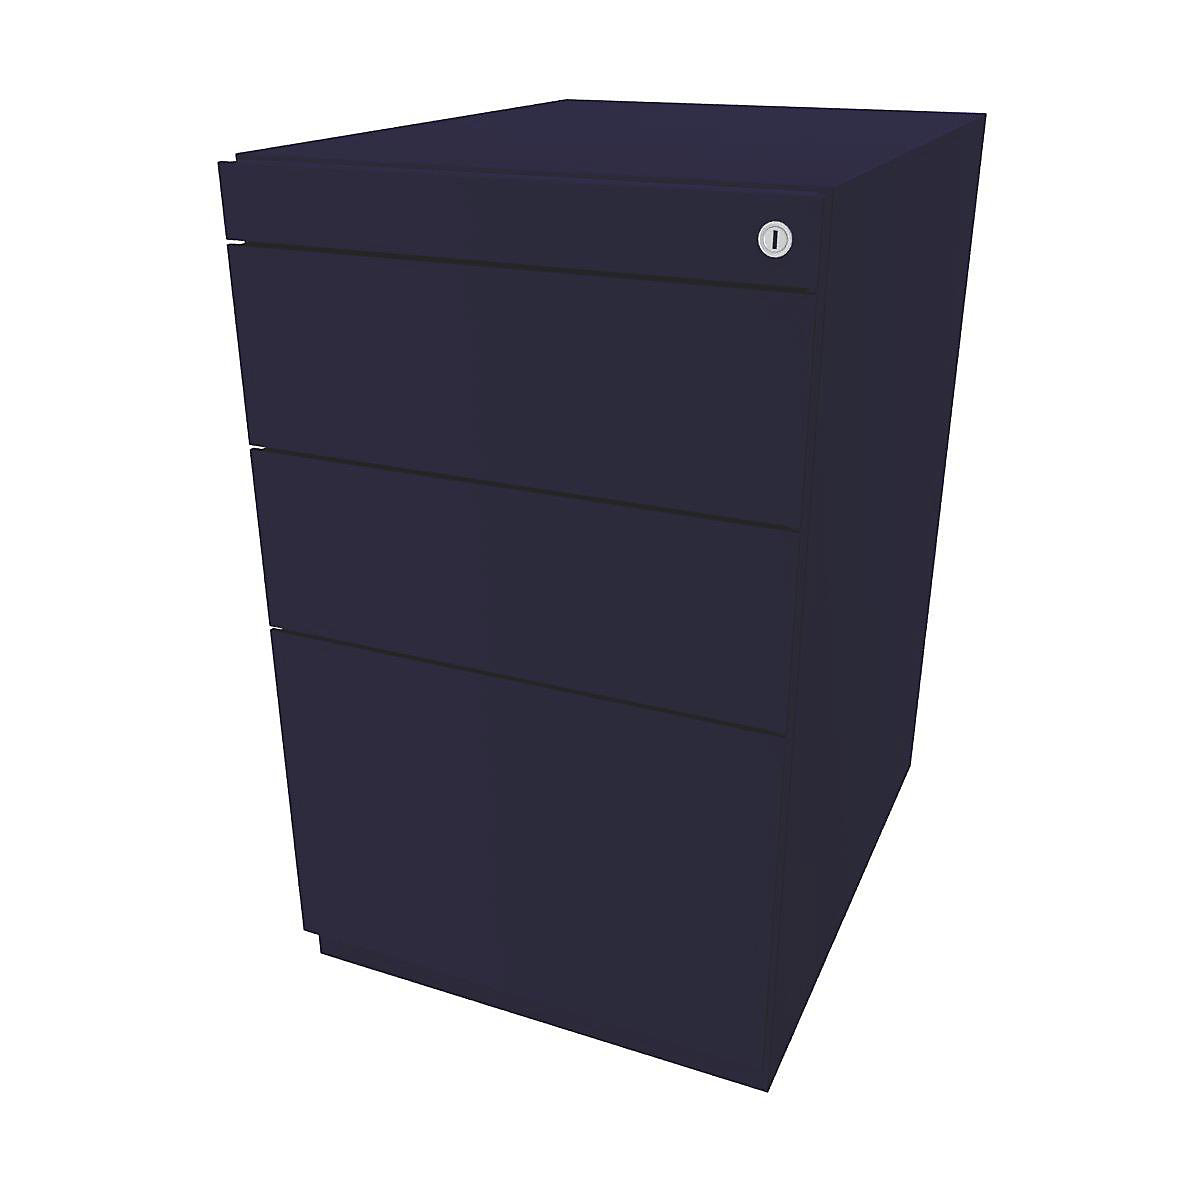 Stacionární kontejner Note™, se 2 univerzálními zásuvkami, 1 kartotékou pro závěsné složky – BISLEY, bez horní krycí desky, hloubka 565 mm, oxfordská modrá-2